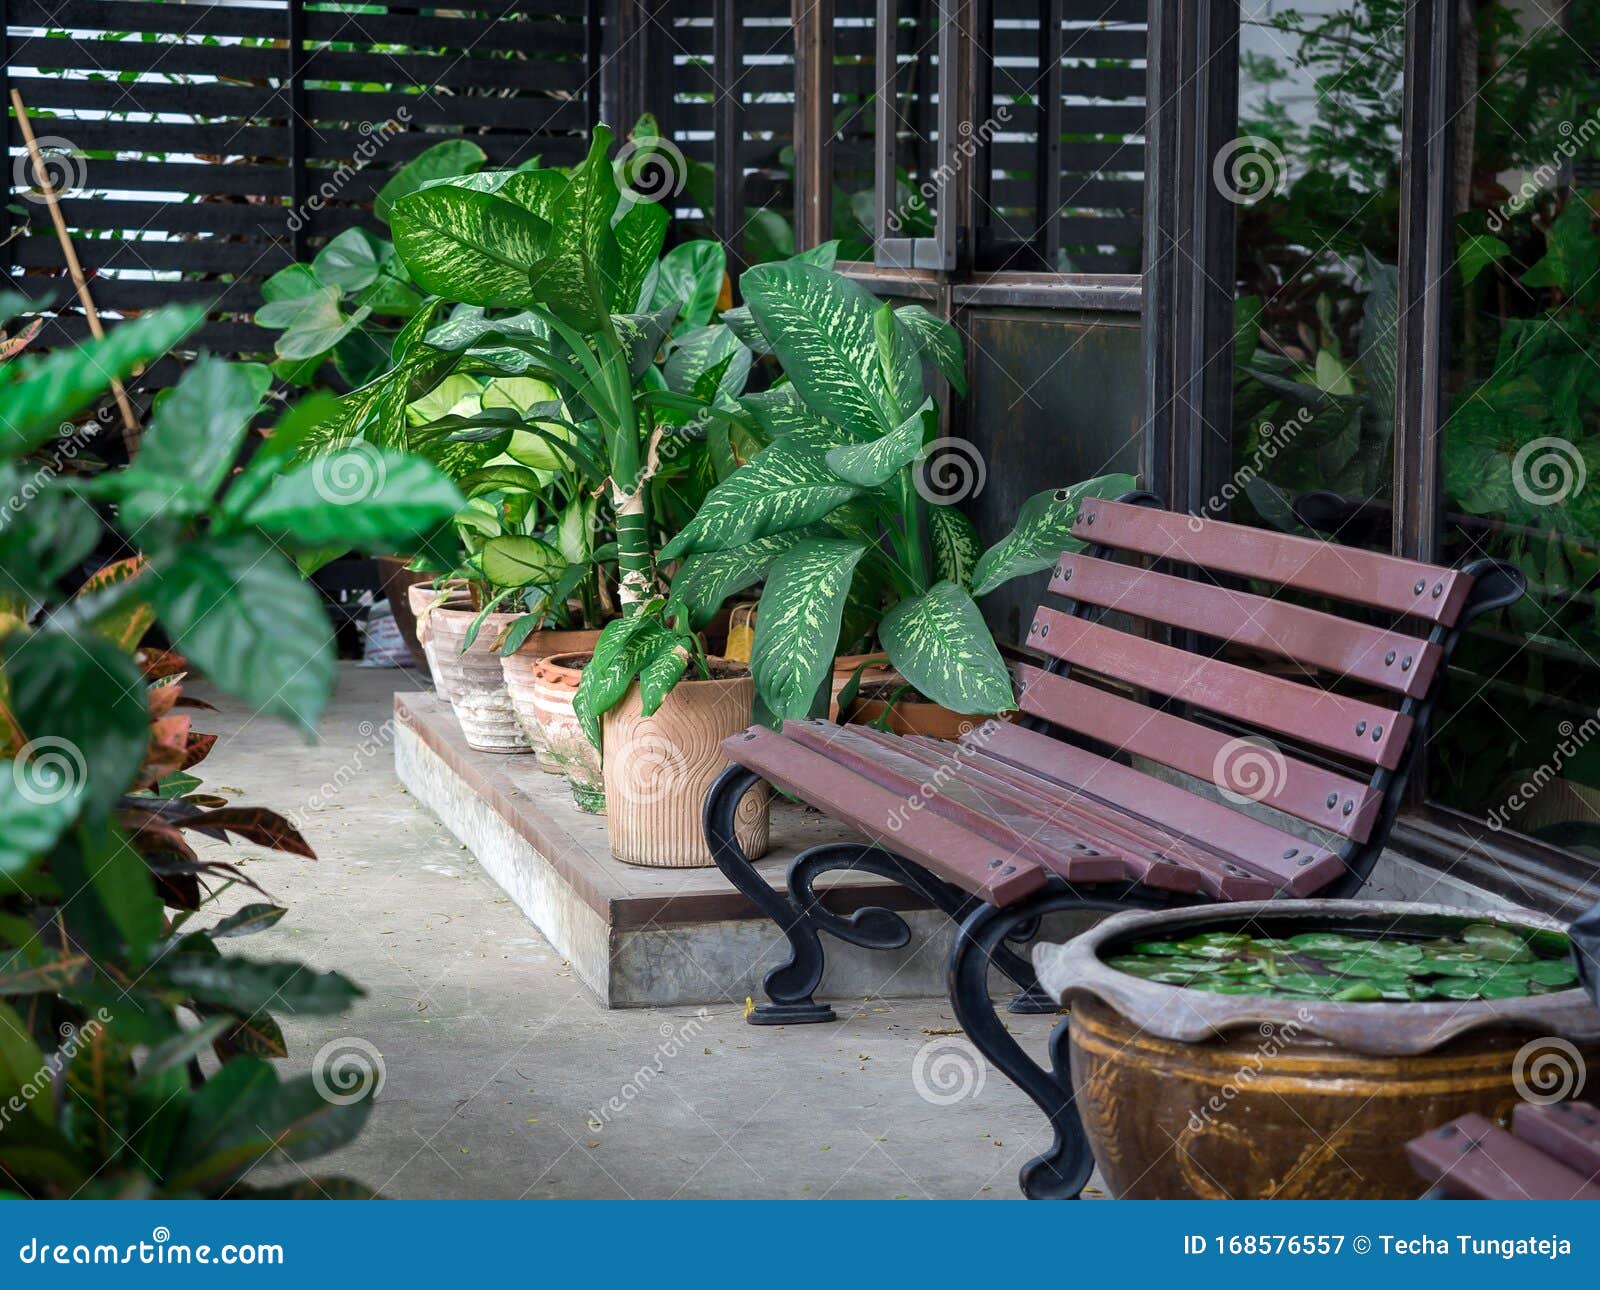 Indoor garden bench with plants